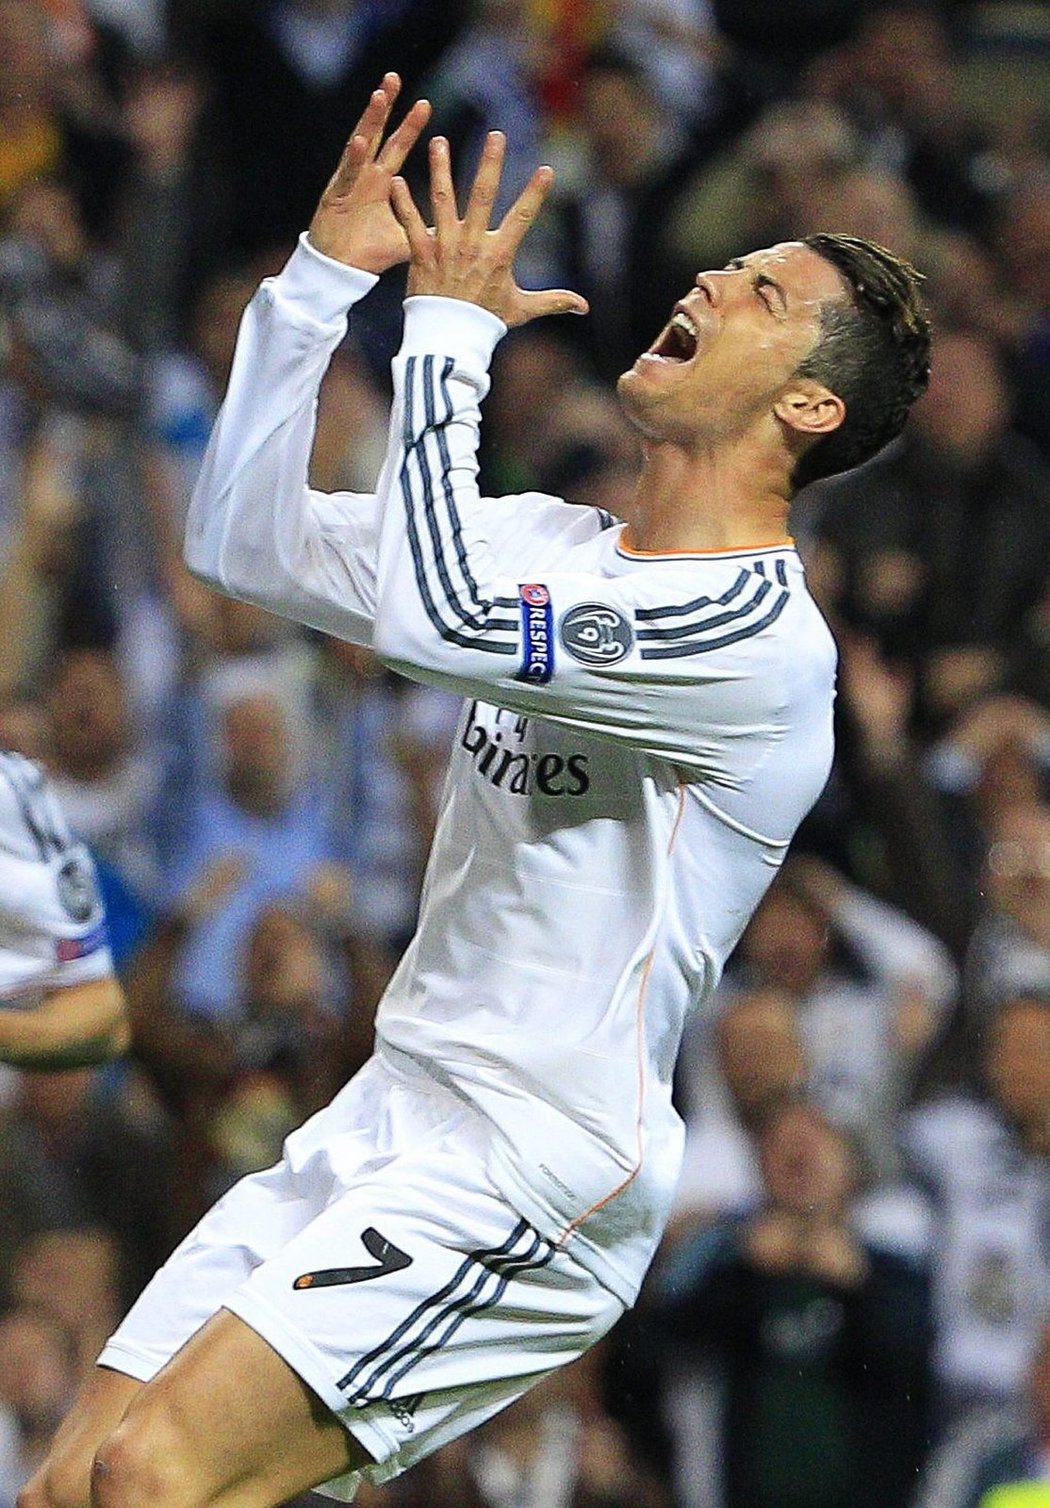 Naštvaný Ronaldo. Kanonýr Realu v momentě, kdy neproměnil jednu ze šancí proti Bayernu v domácím semifinále Ligy mistrů